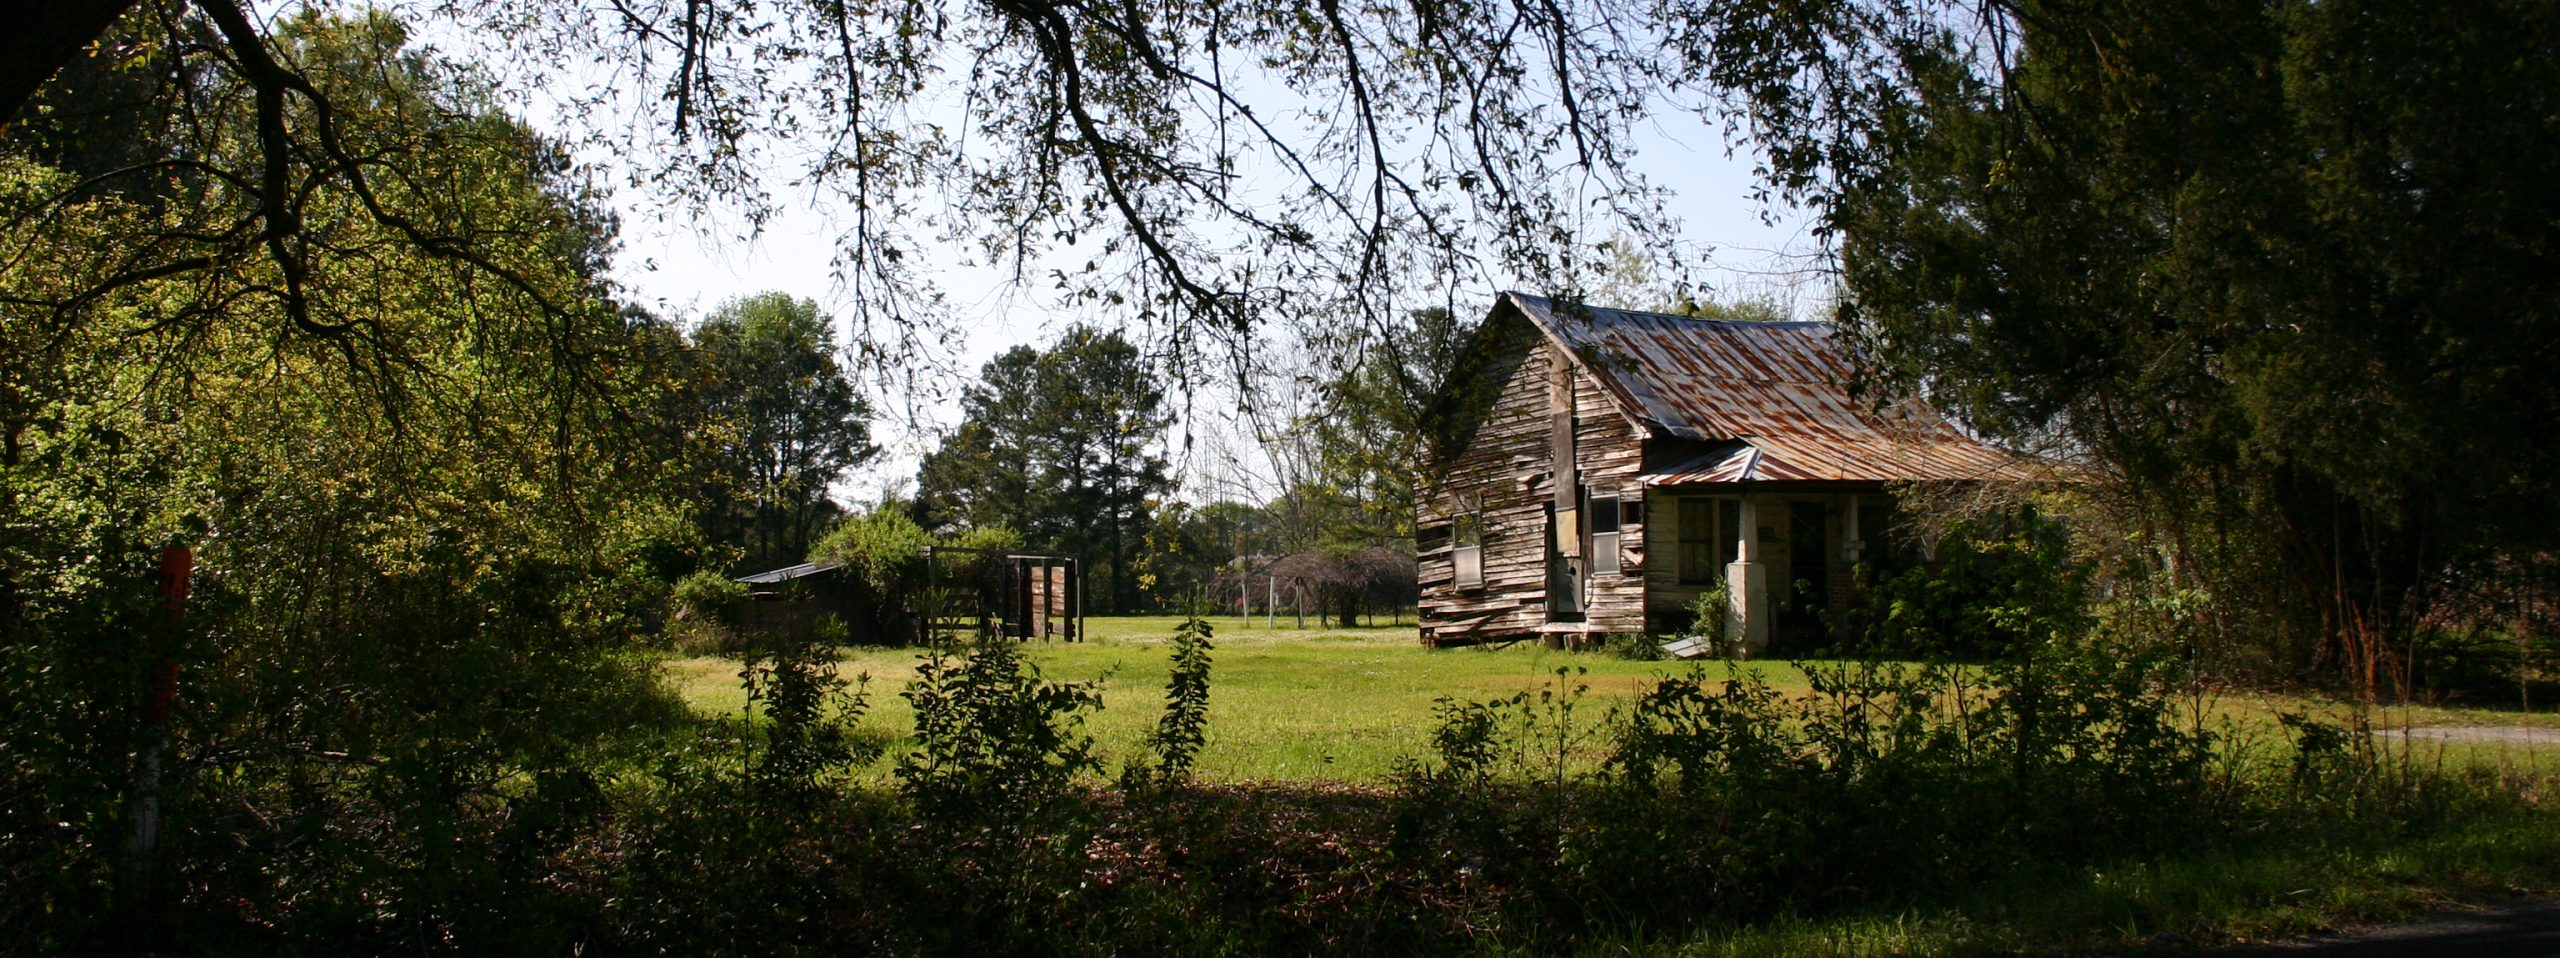 Farmhouse CROP